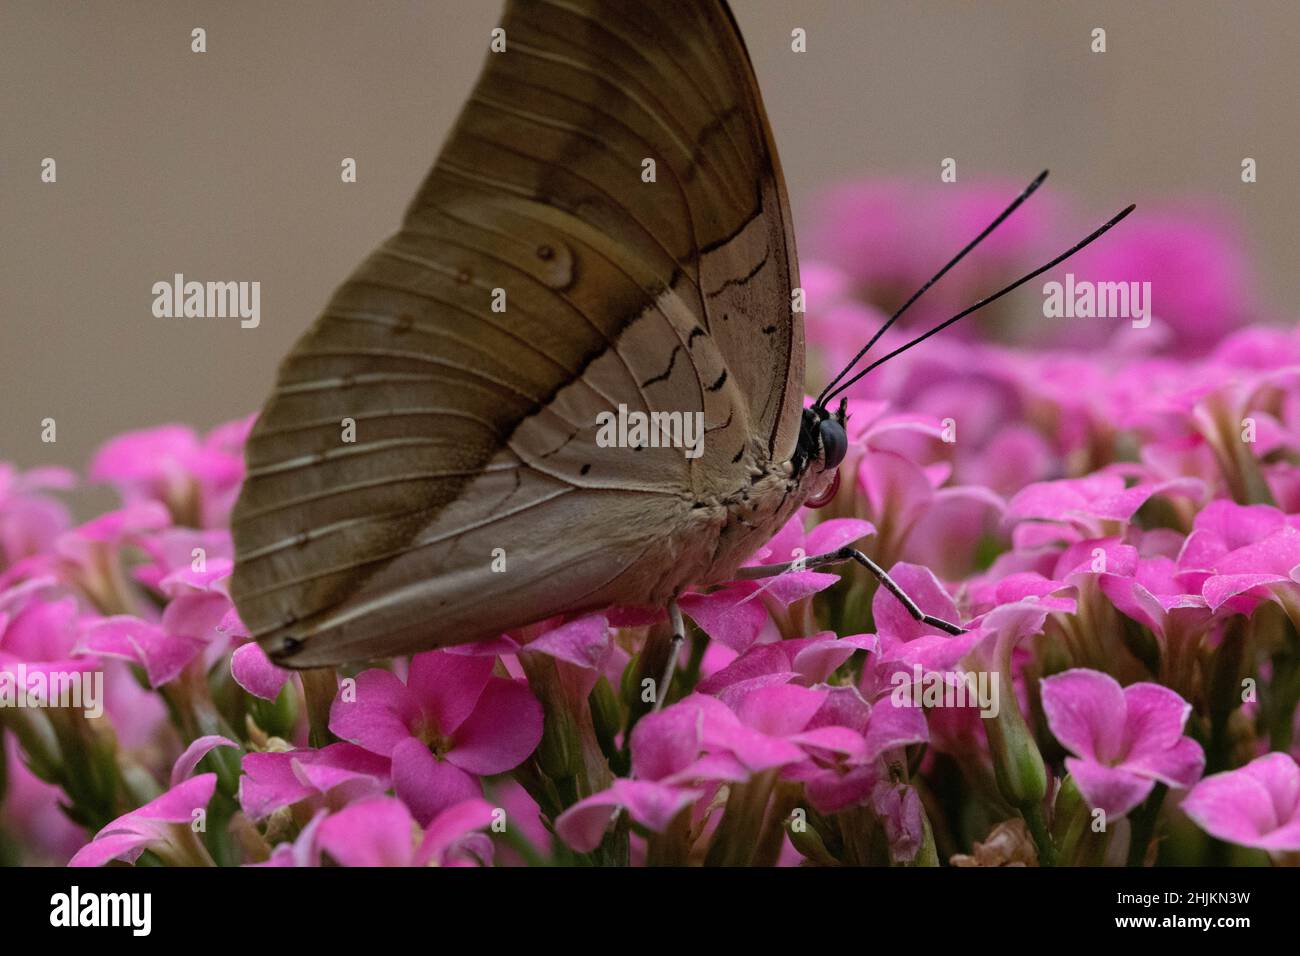 Ein brauner Schmetterling sitzt auf pinkfarbenen Blüten  in der Allgäuer Schmetterling Erlebniswelt, einem Schmetterlingspark mit Gewächshäusern volle Stock Photo